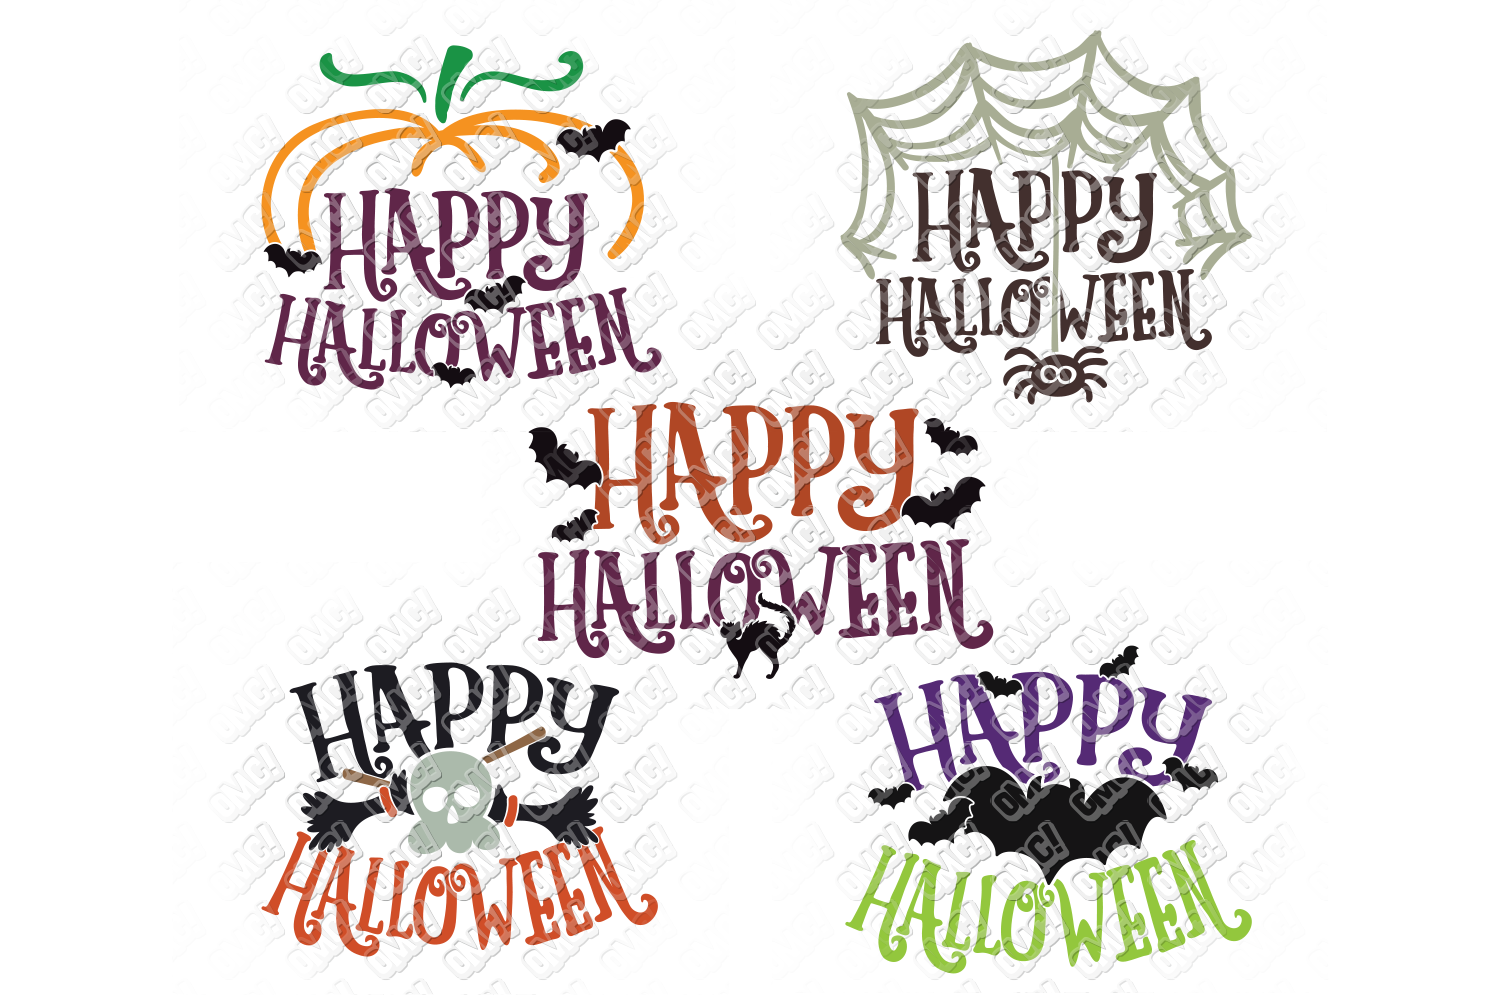 Happy Halloween SVG Bundle in SVG, DXF, PNG, EPS, JPEG